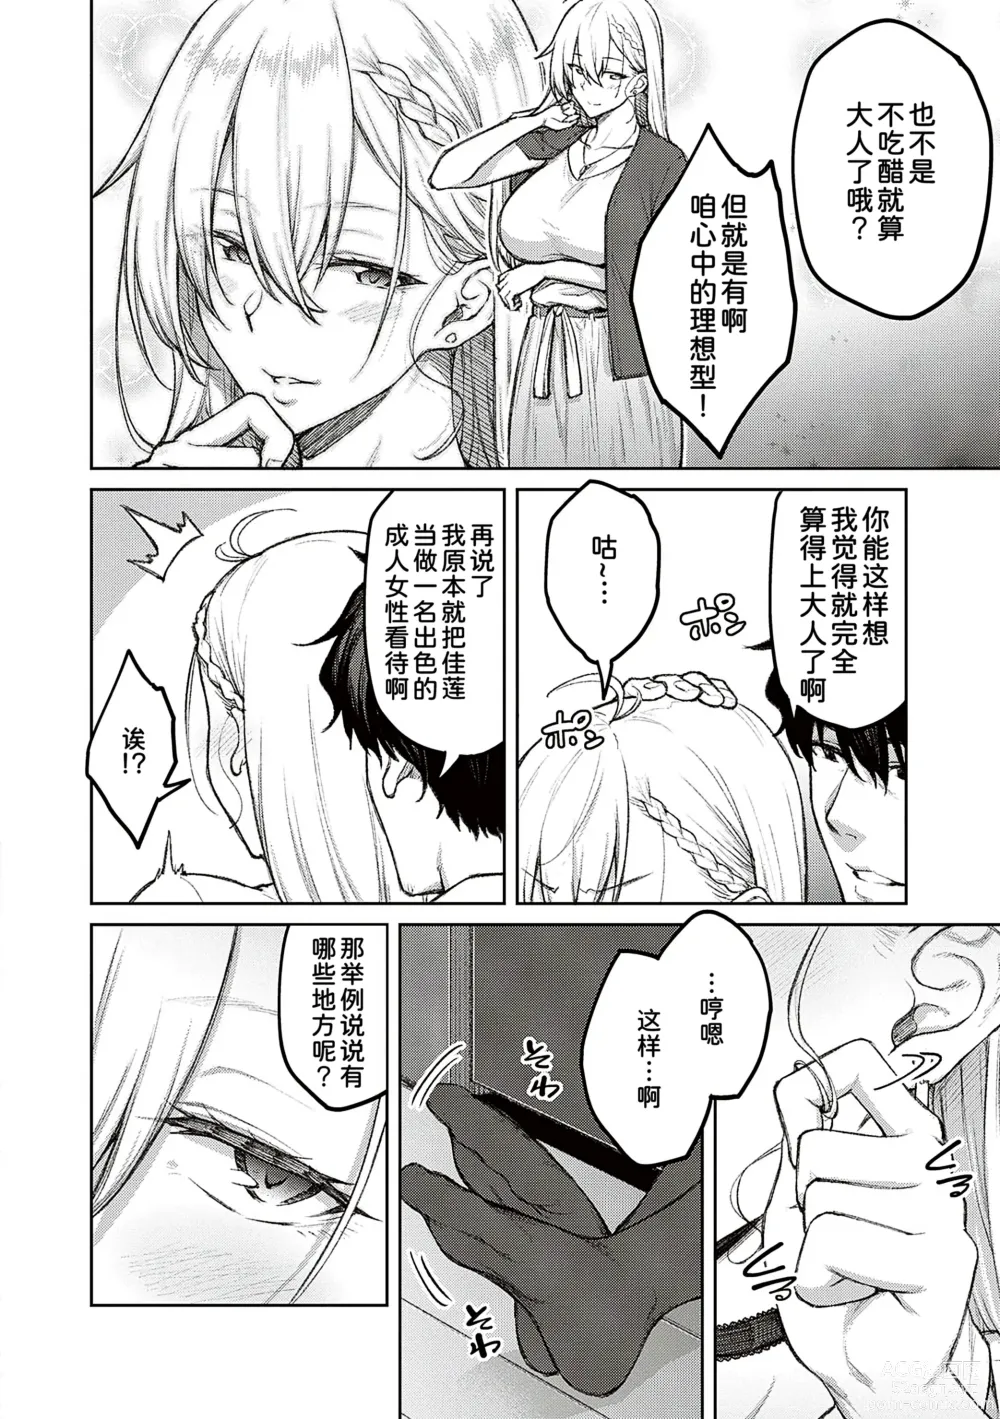 Page 10 of manga Honey Temptation